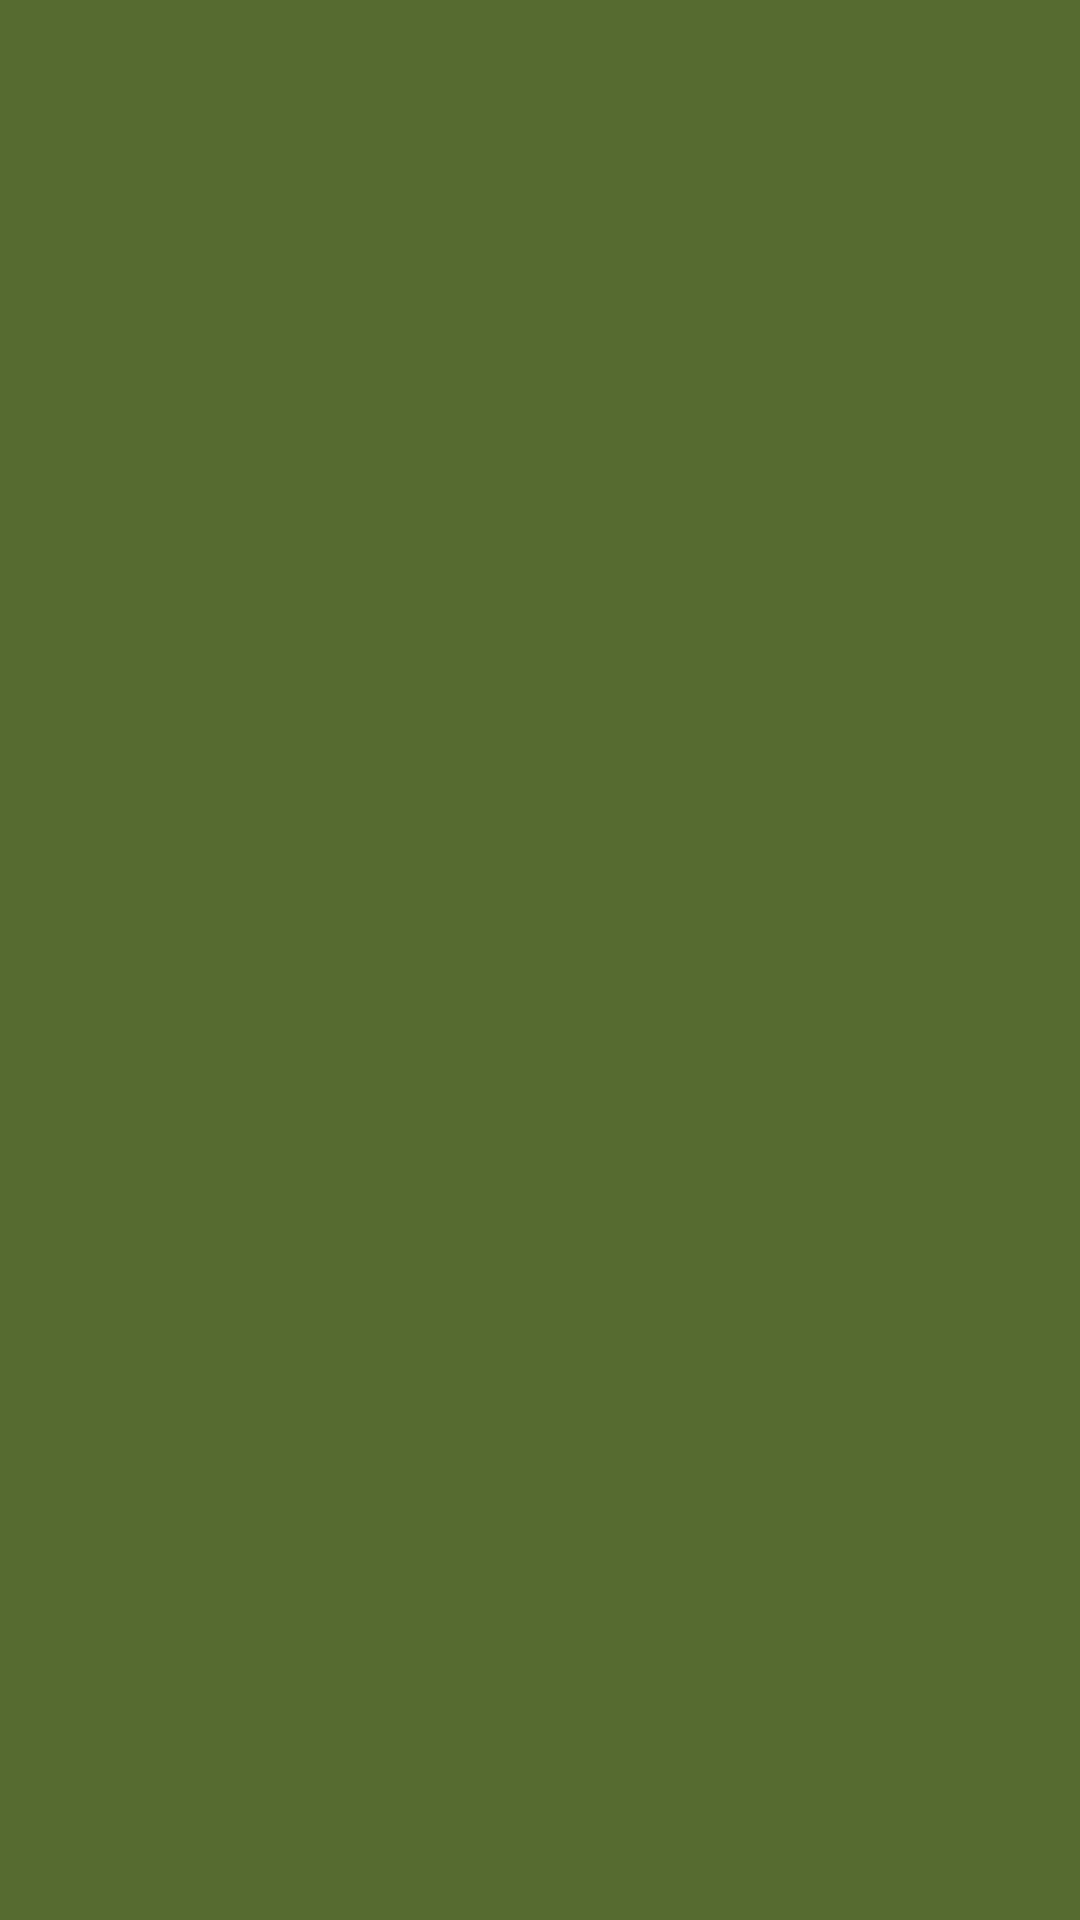 Einfacherolivgrüner Hintergrund Für Das Handy.